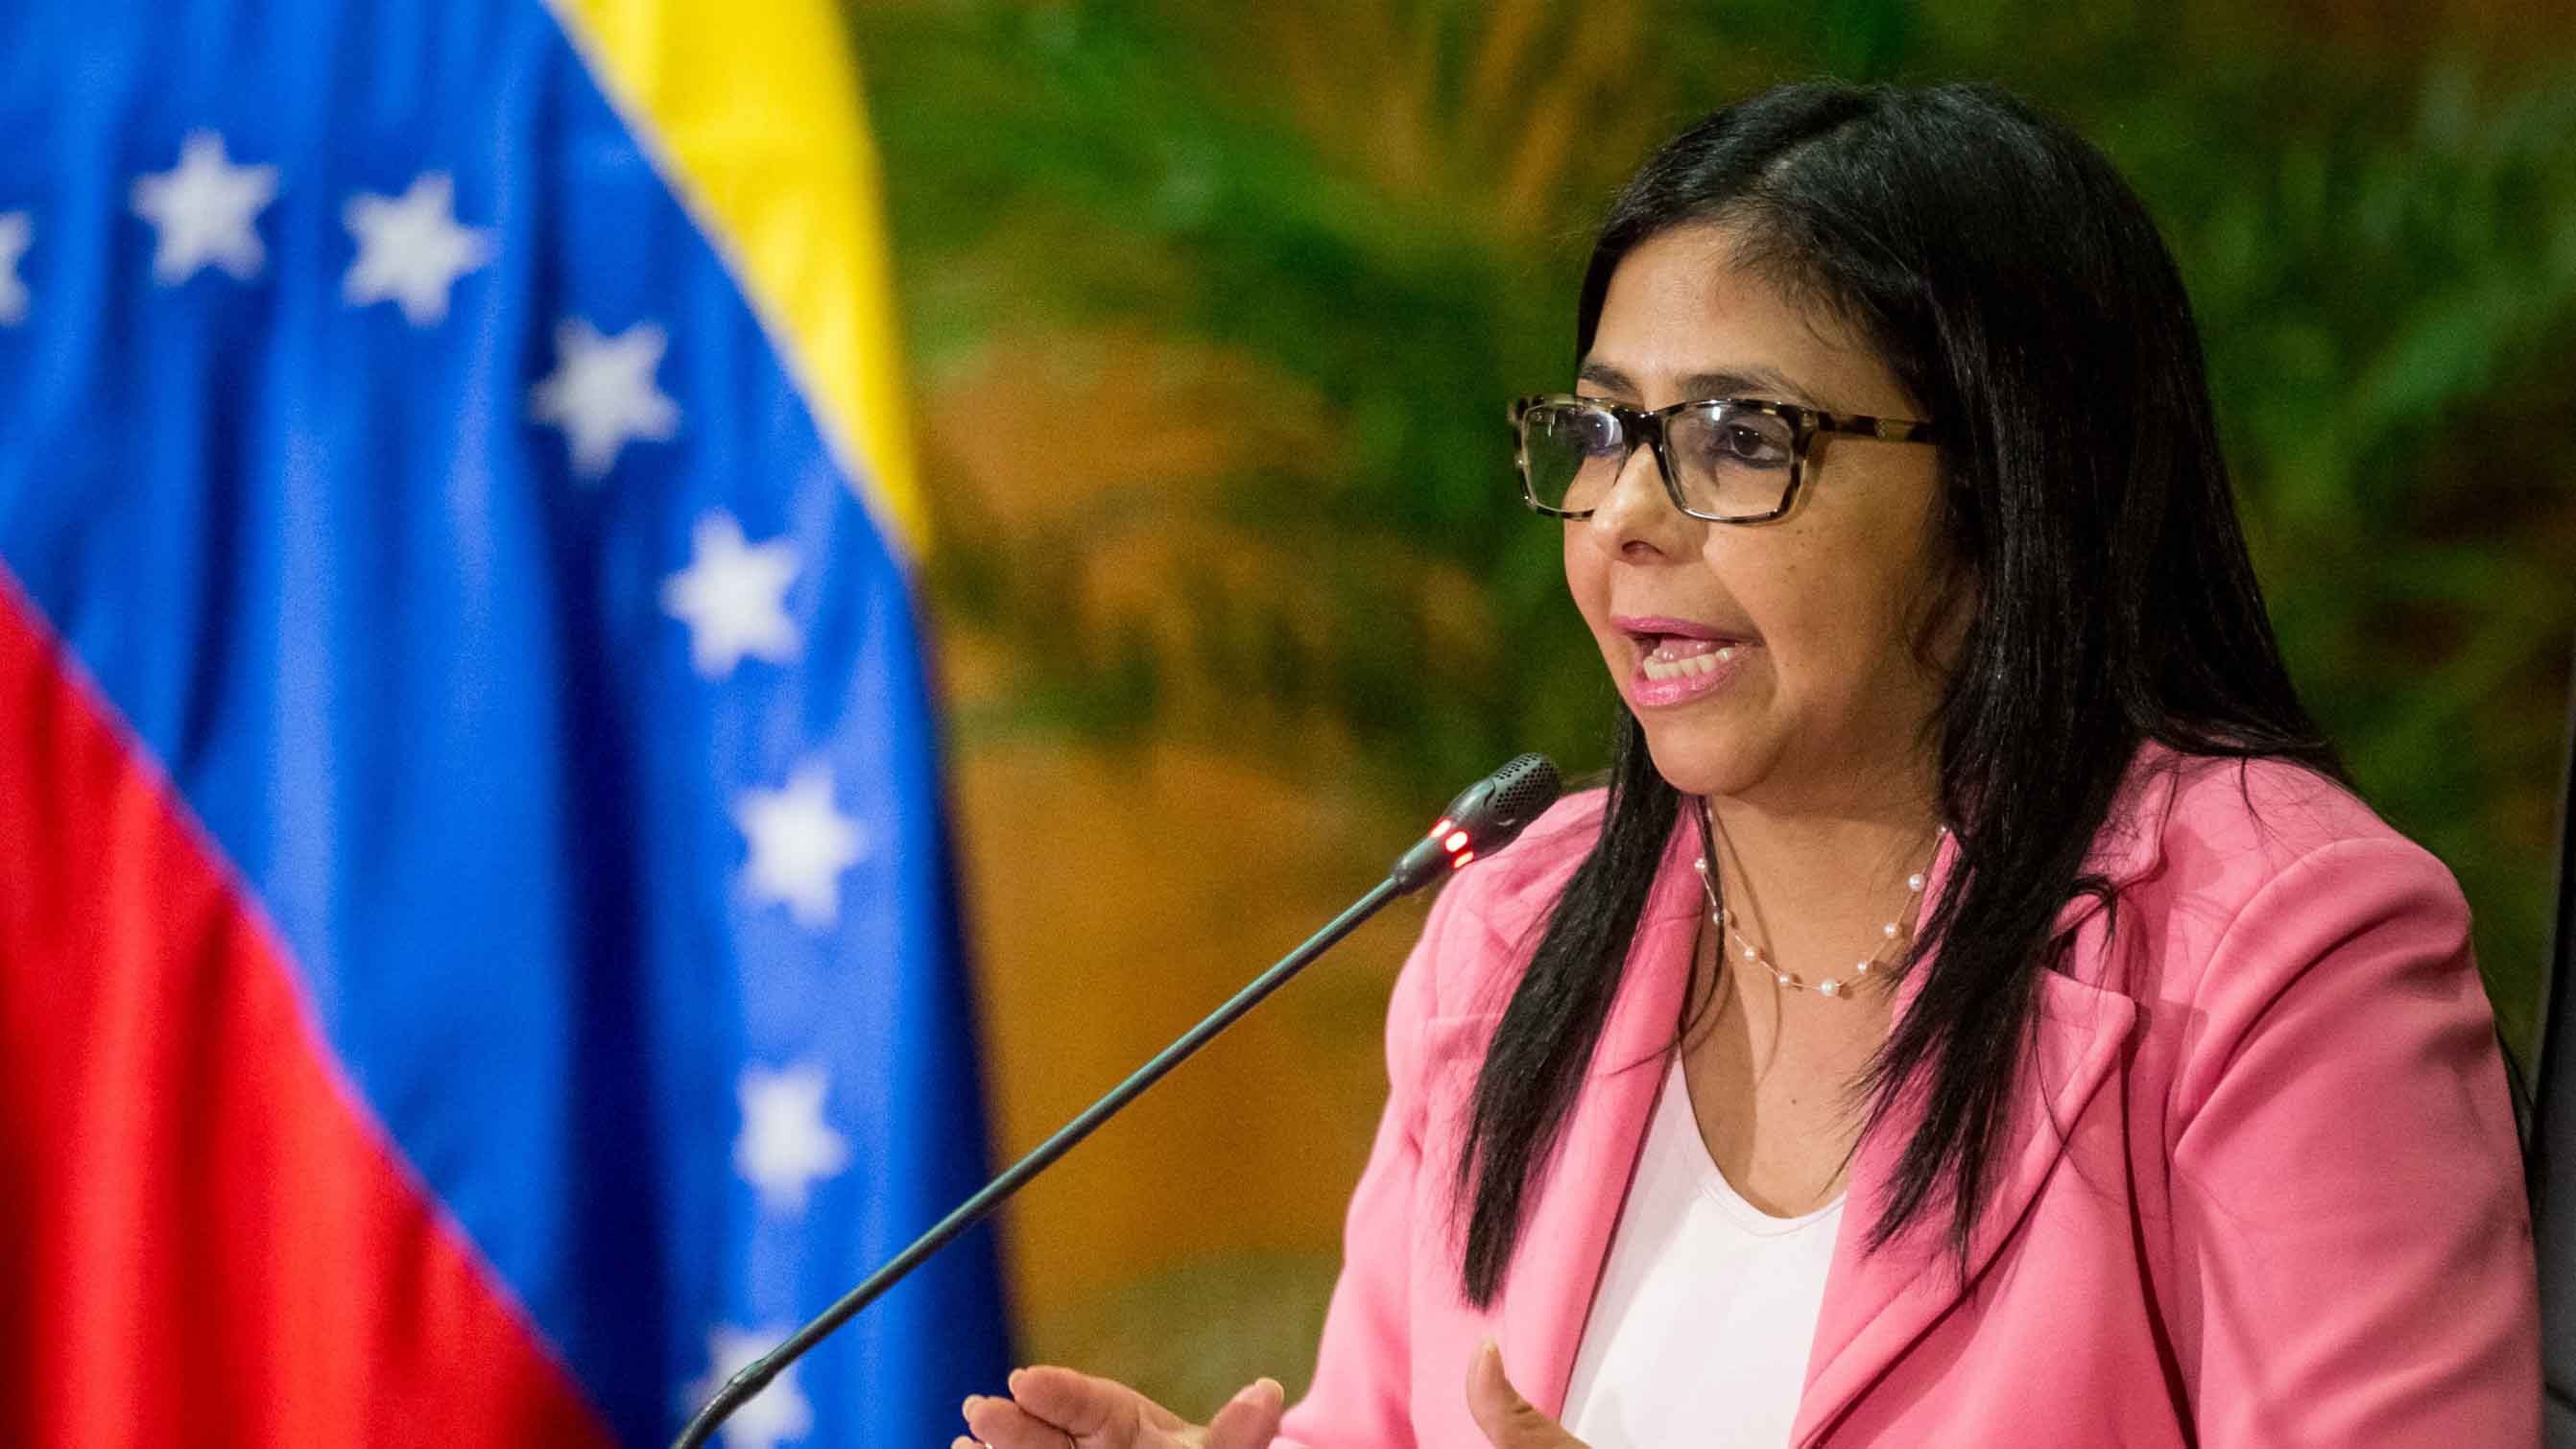 La presidenta de la Asamblea Nacional Constituyente "culpó" a los lideres de la oposición asegurando que "buscan perjudicar al pueblo de Venezuela"